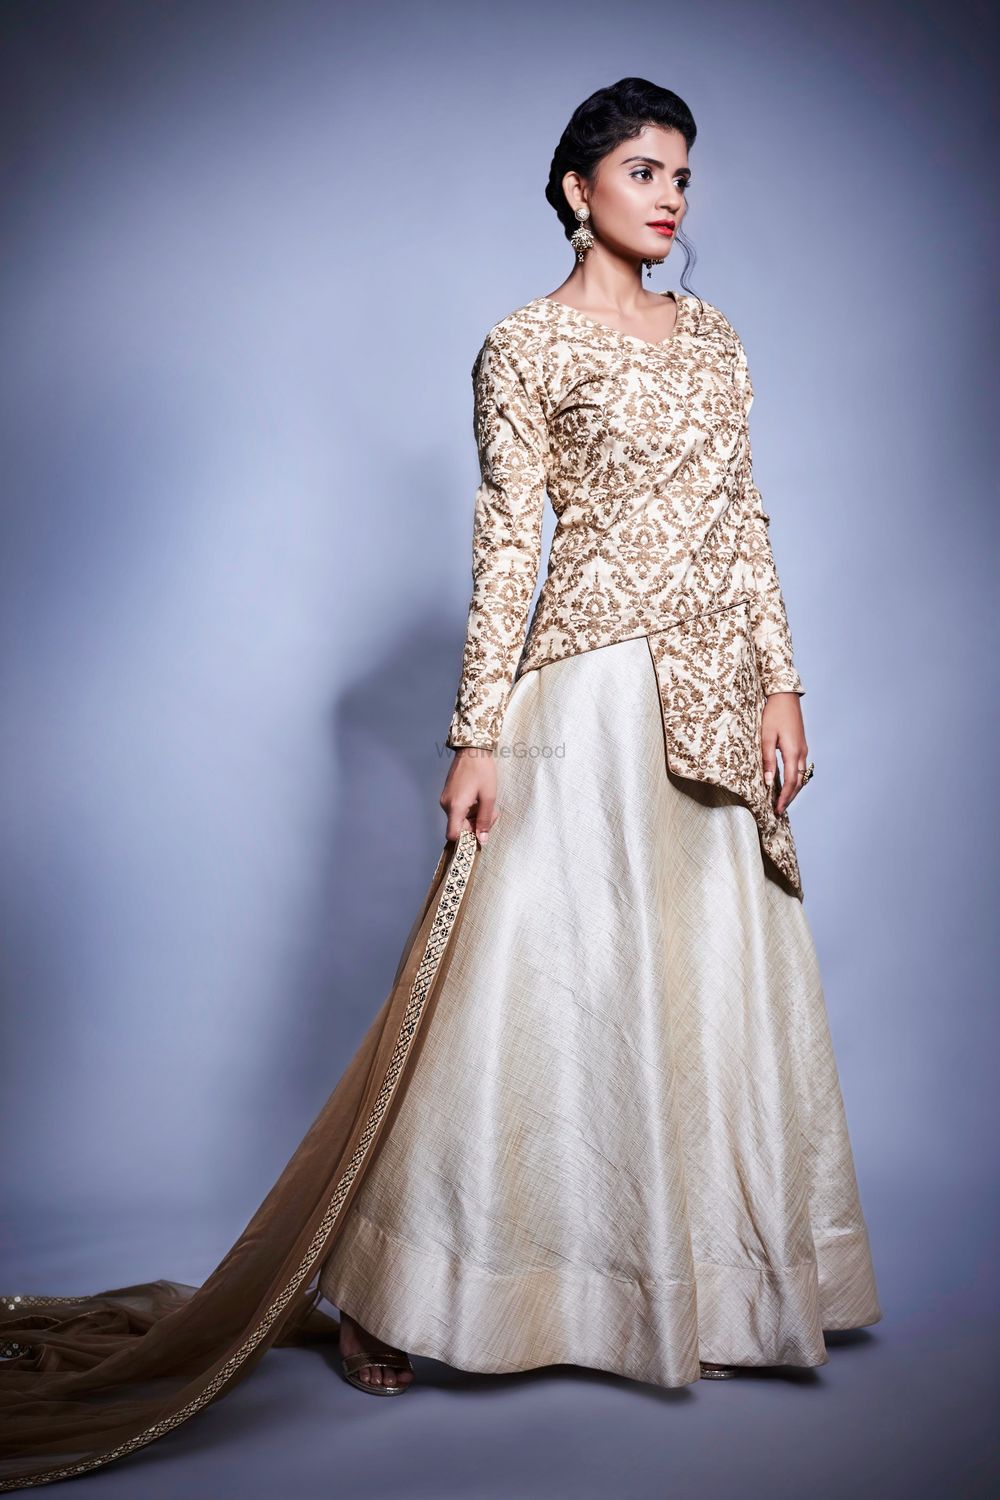 Photo From The wedding look - By Neha Chavan Design Studio